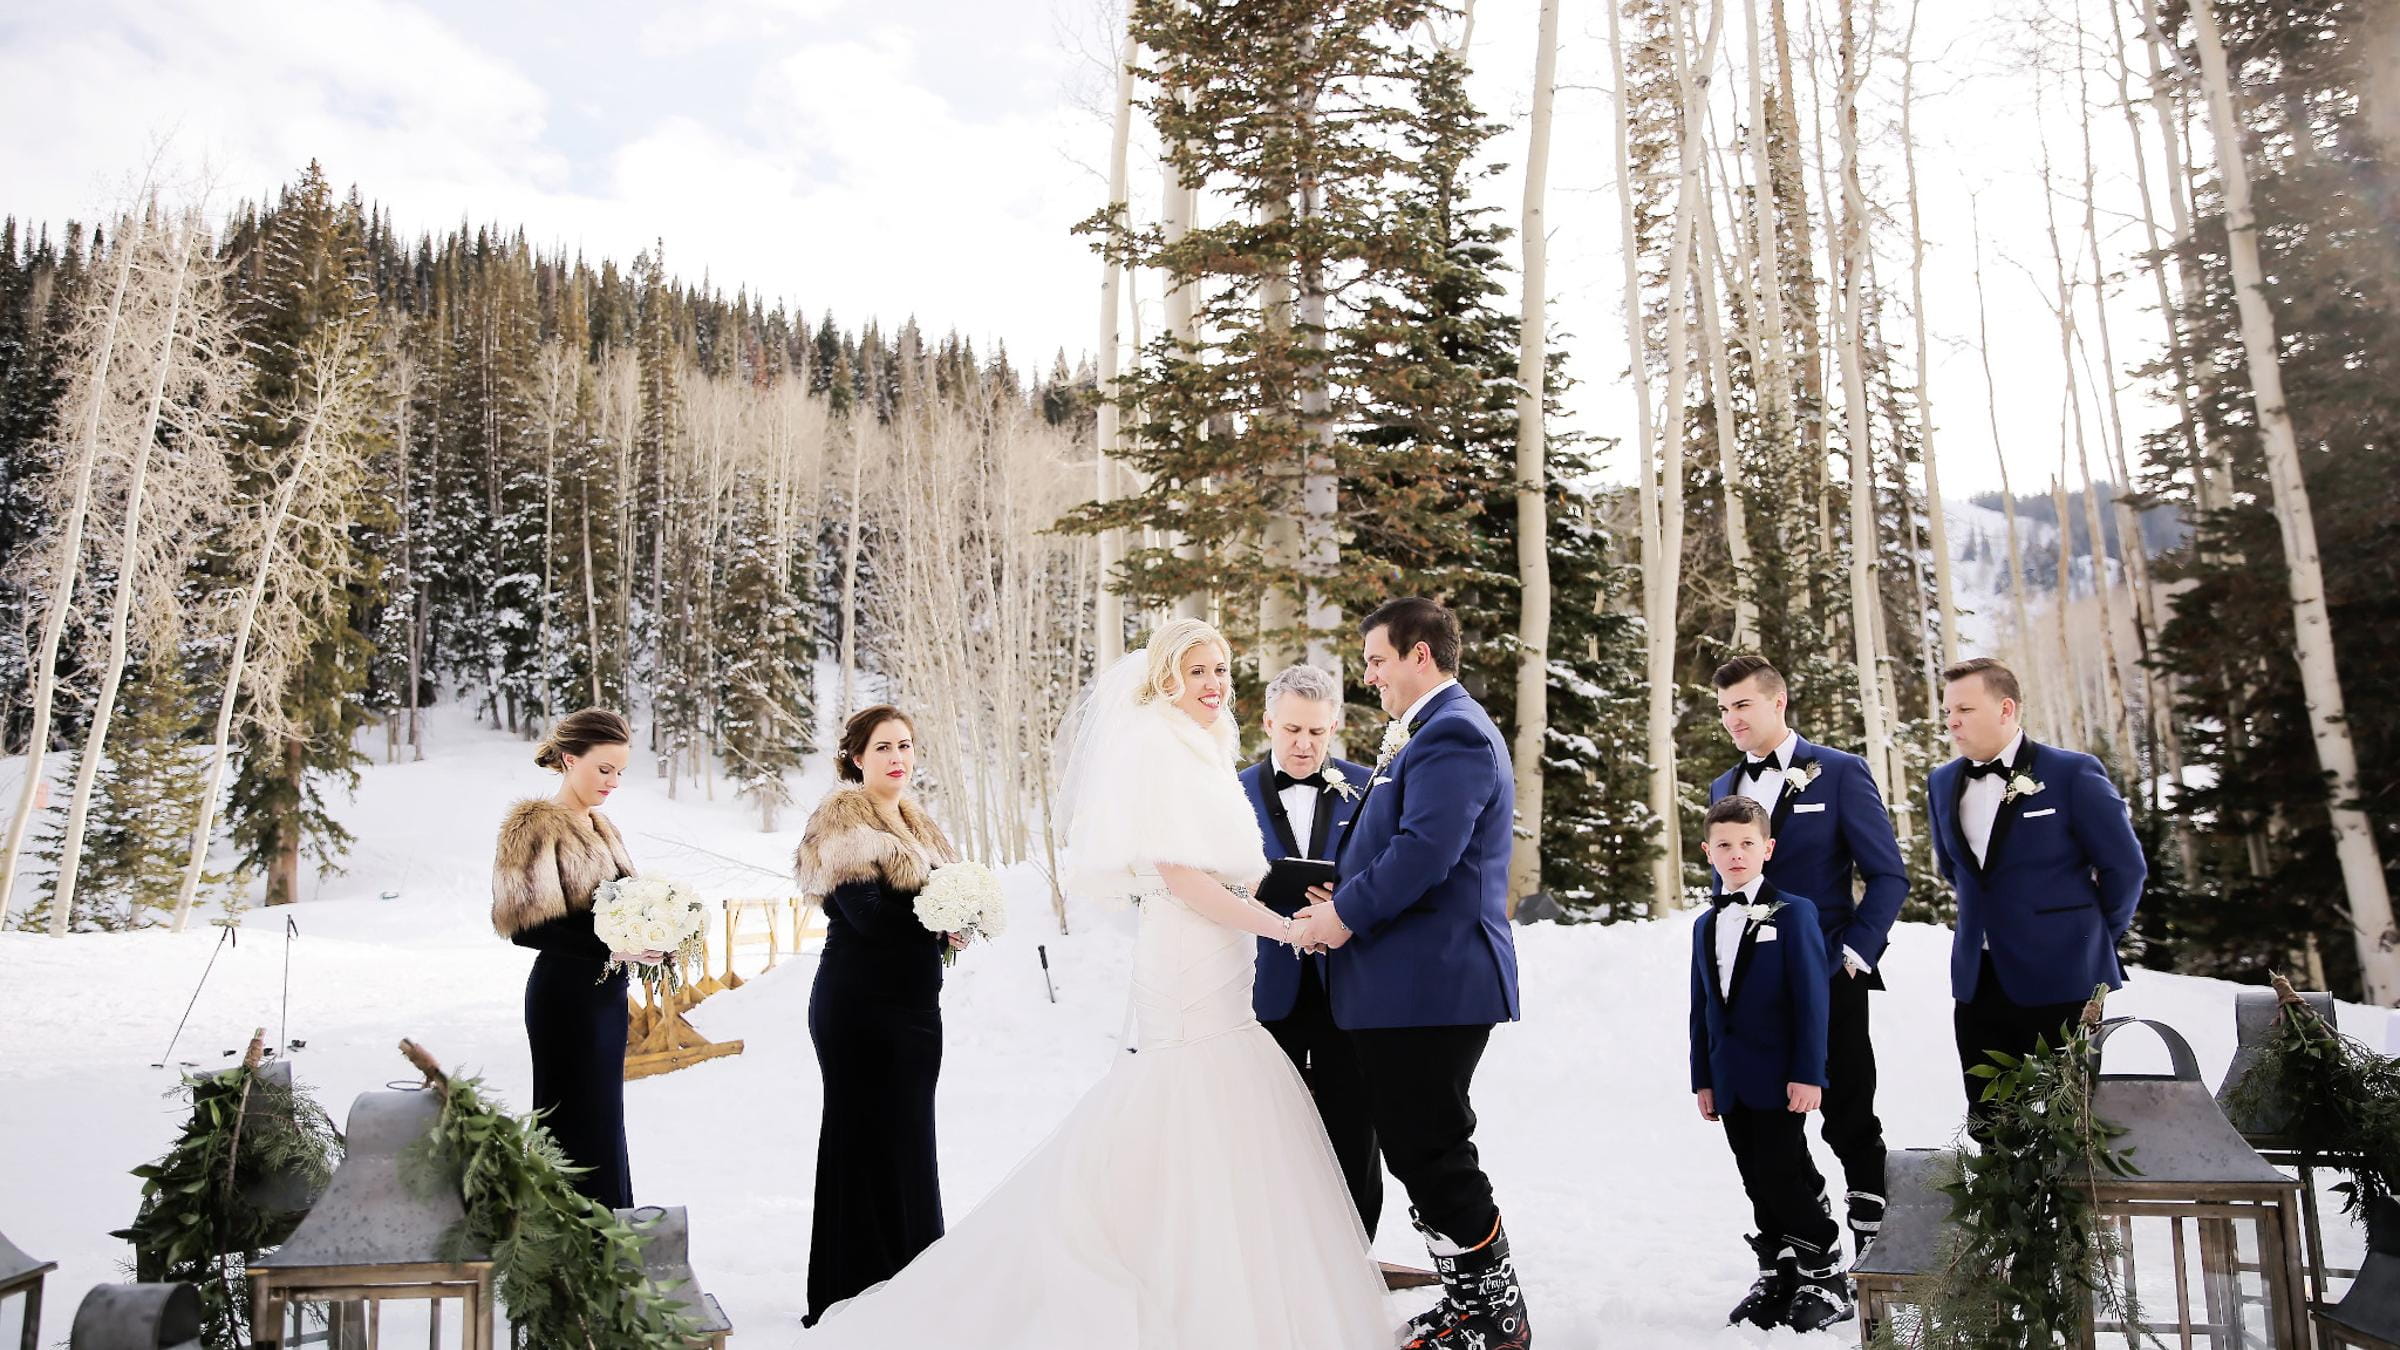 An outdoor winter wedding at Deer Valley Resort